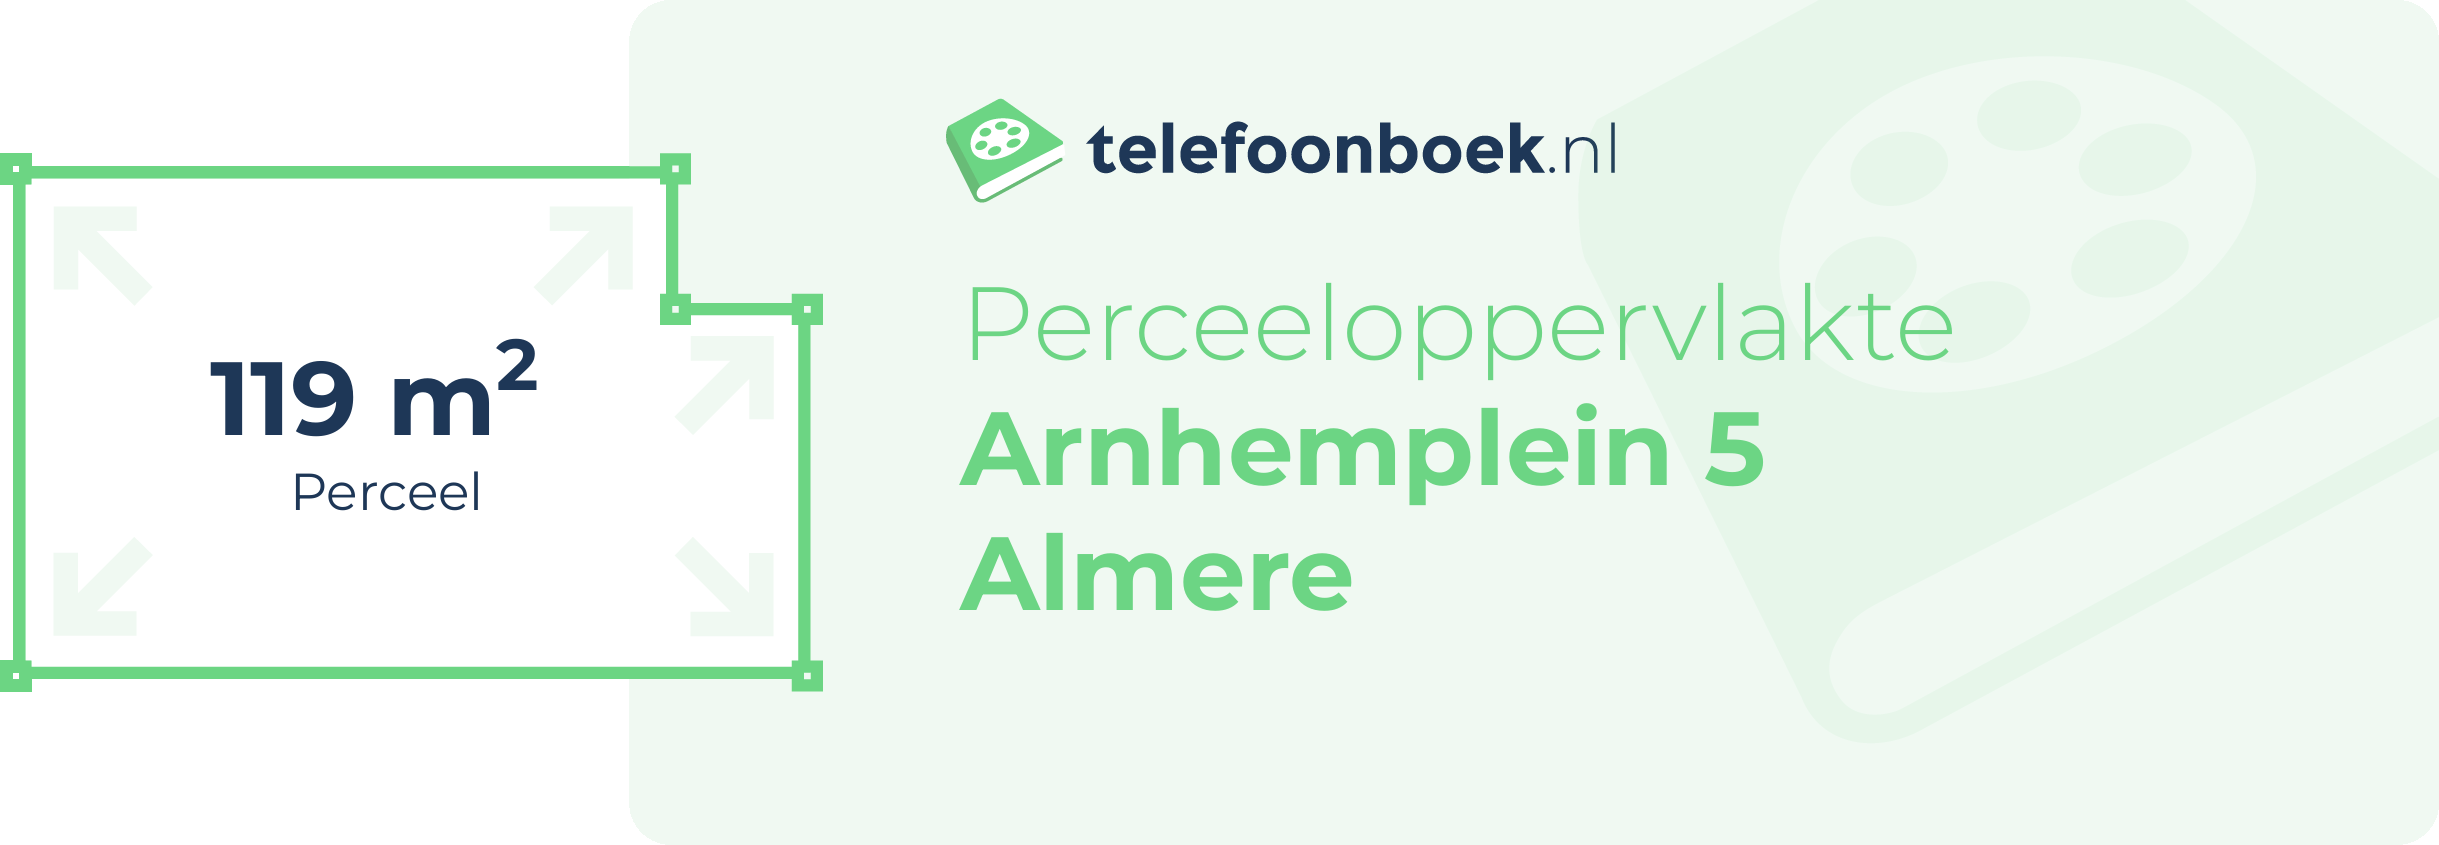 Perceeloppervlakte Arnhemplein 5 Almere